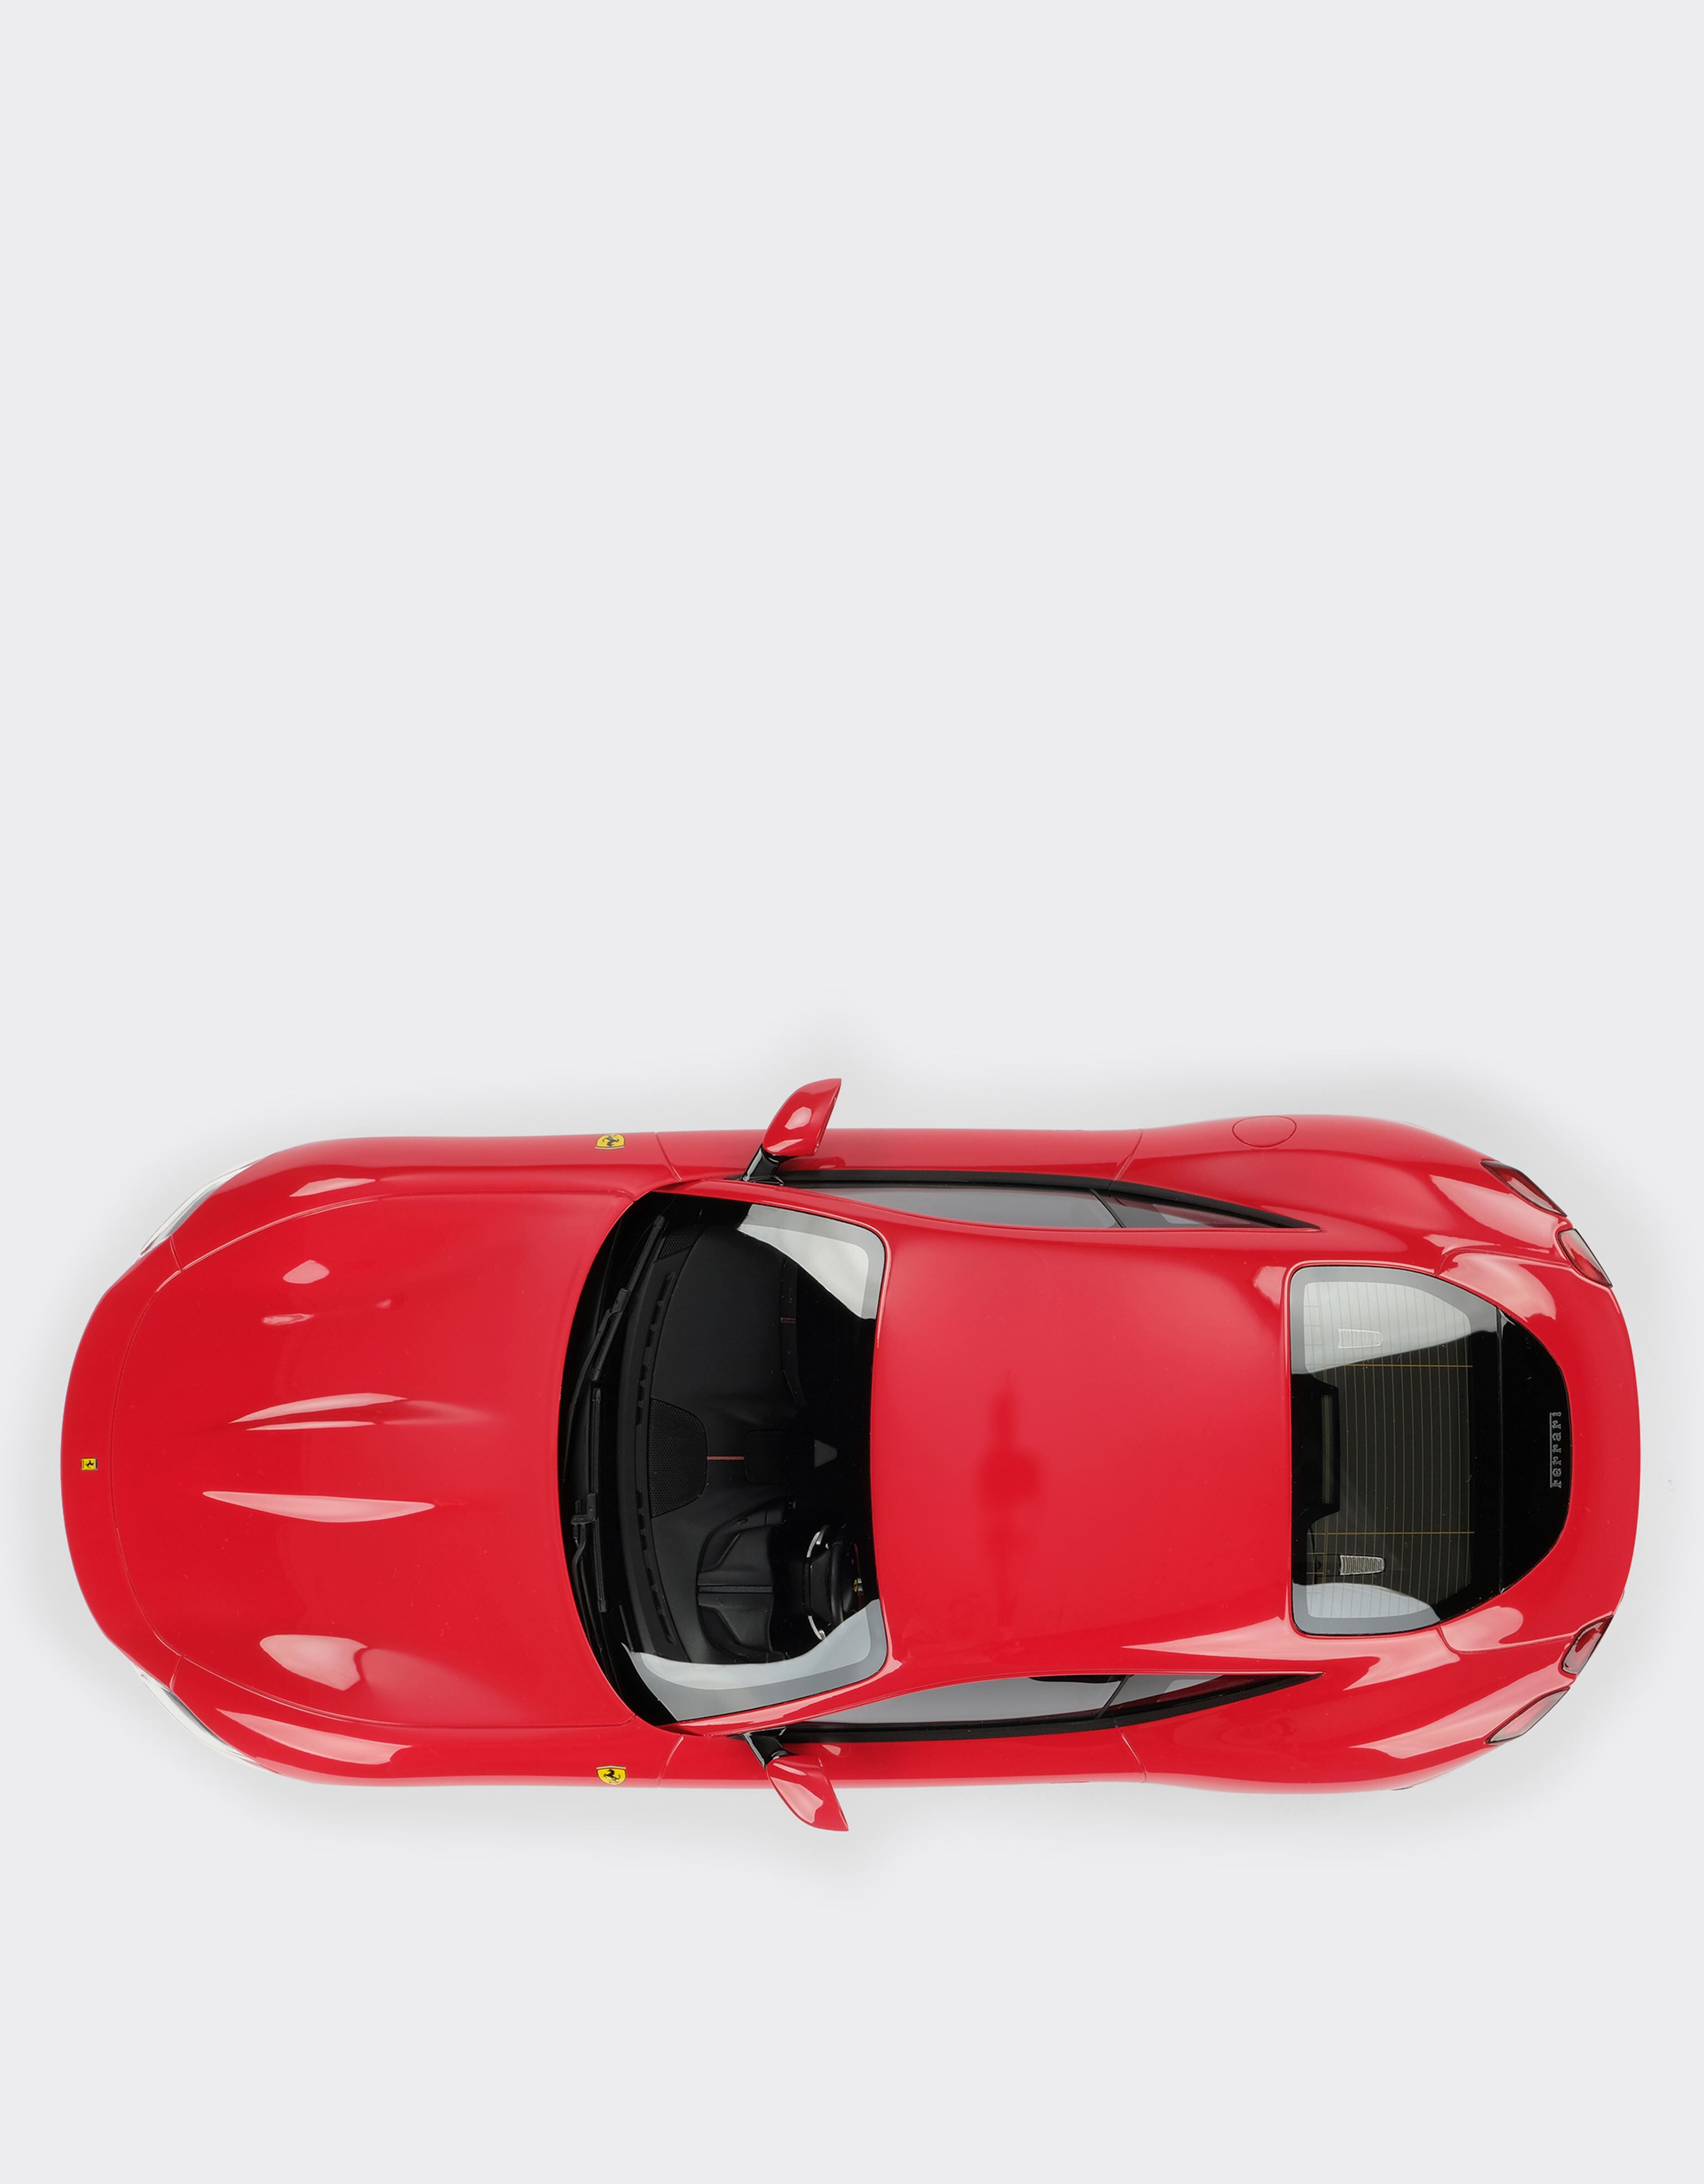 Ferrari Ferrari Roma モデルカー 1:12スケール レッド F0073f